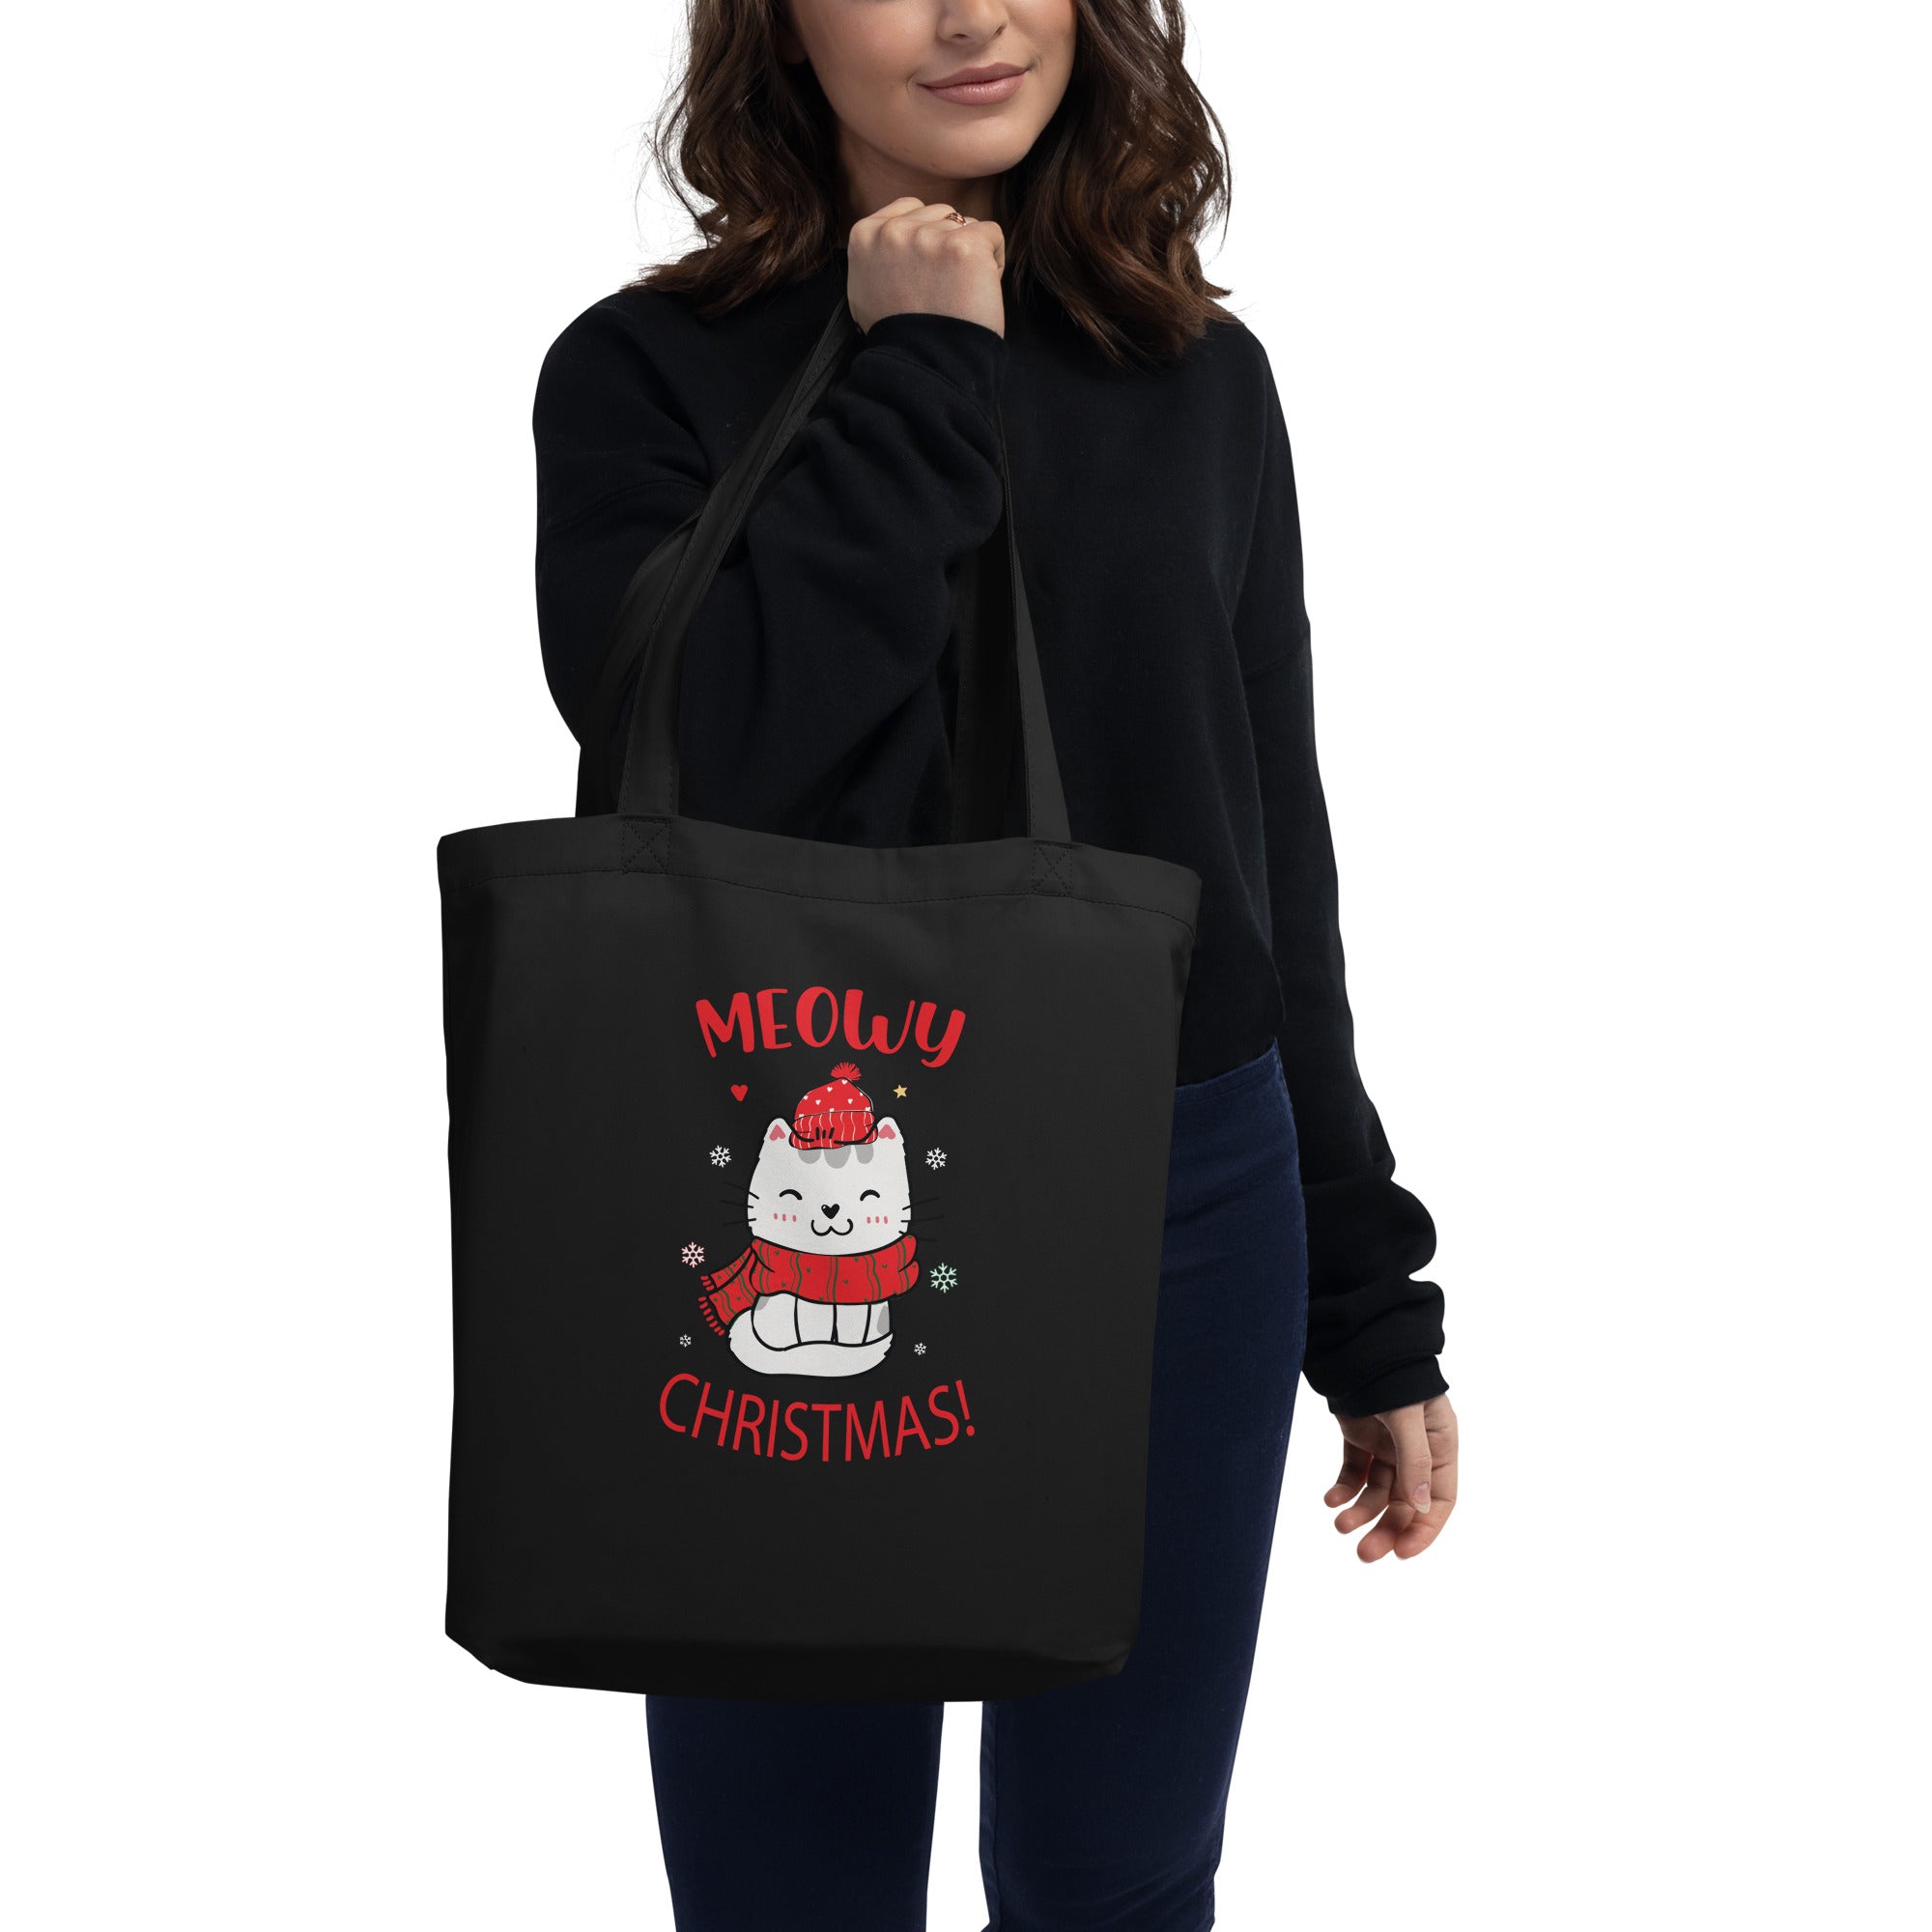 Christmas Cat Tote Bag